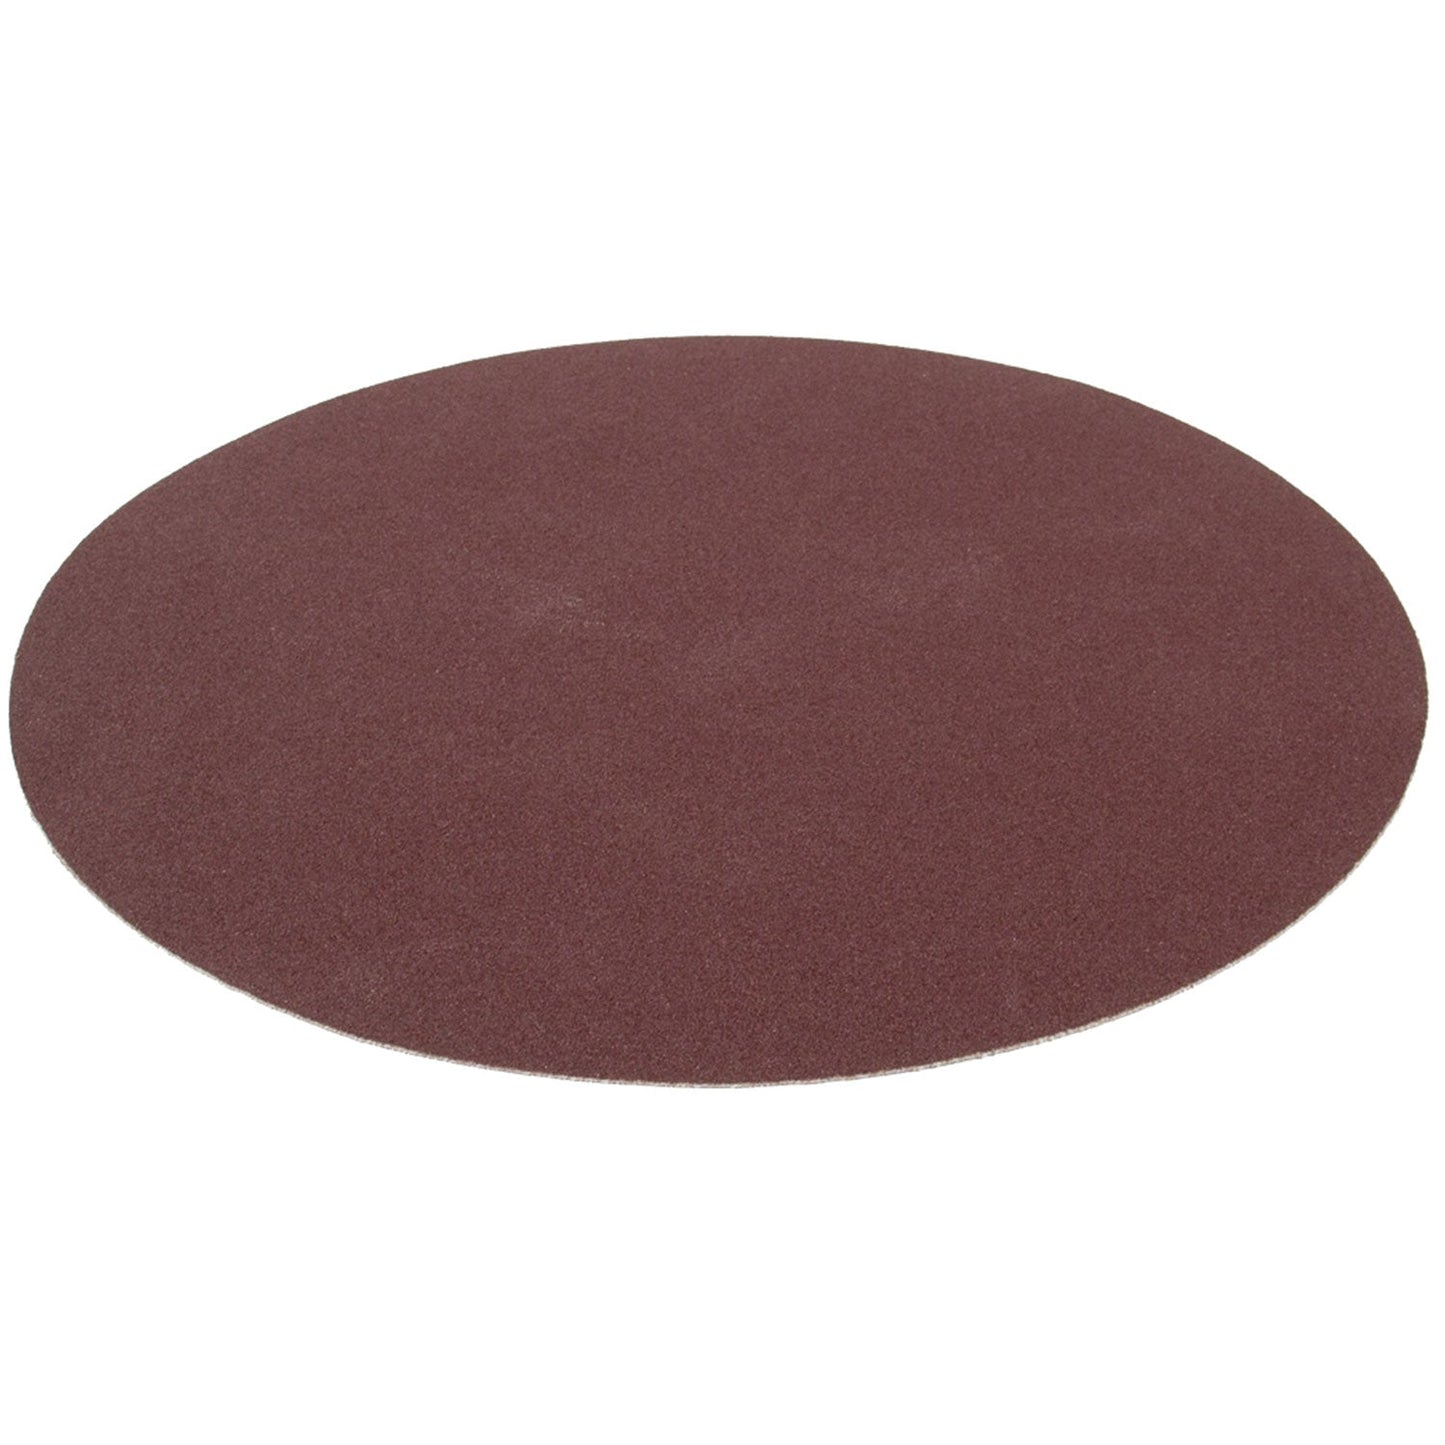 SIP 12" 80 Grit Medium Sanding Disc, Sip Industrial